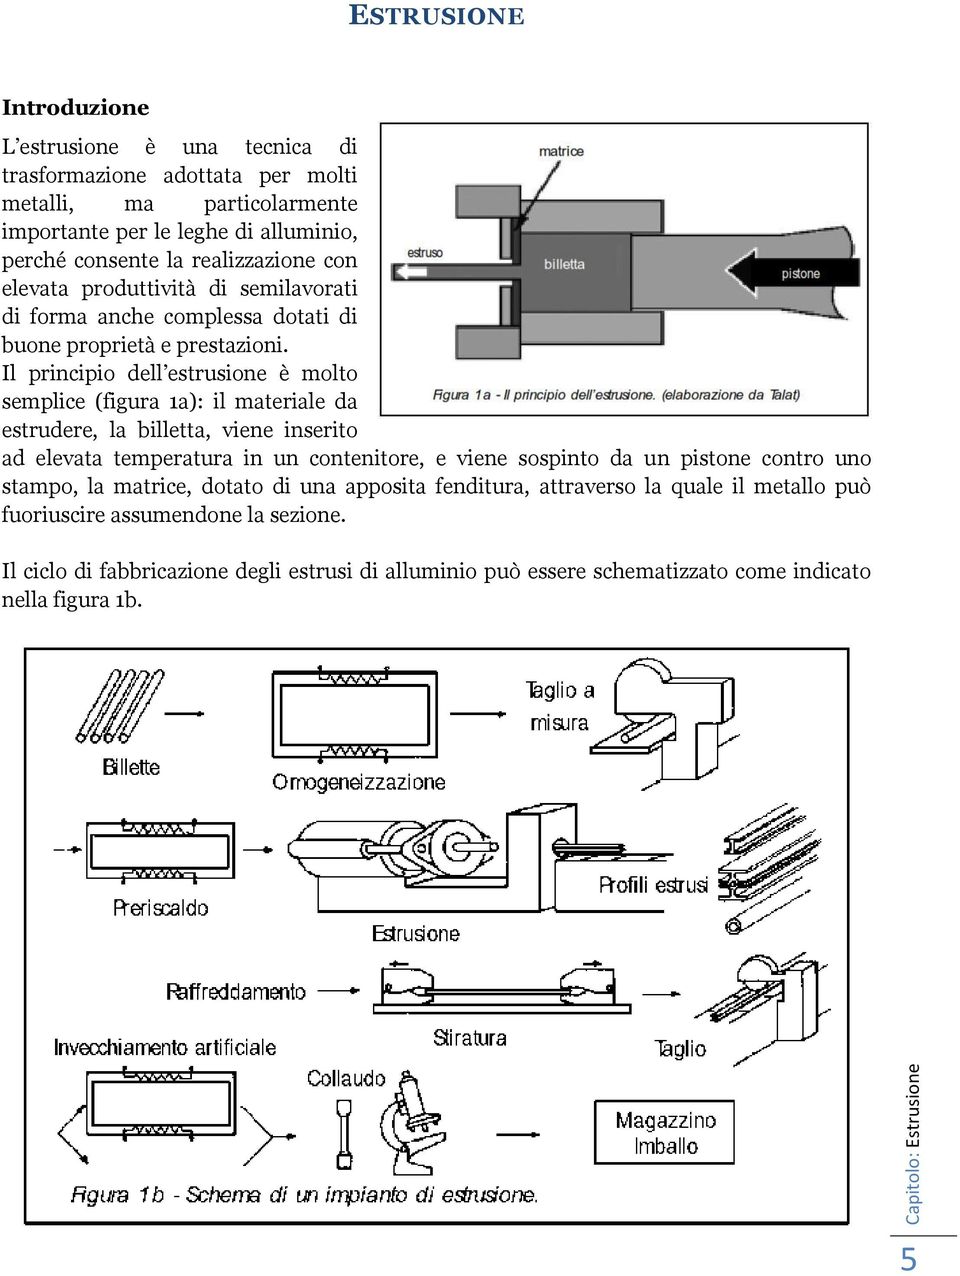 Il principio dell estrusione è molto semplice (figura 1a): il materiale da estrudere, la billetta, viene inserito ad elevata temperatura in un contenitore, e viene sospinto da un pistone